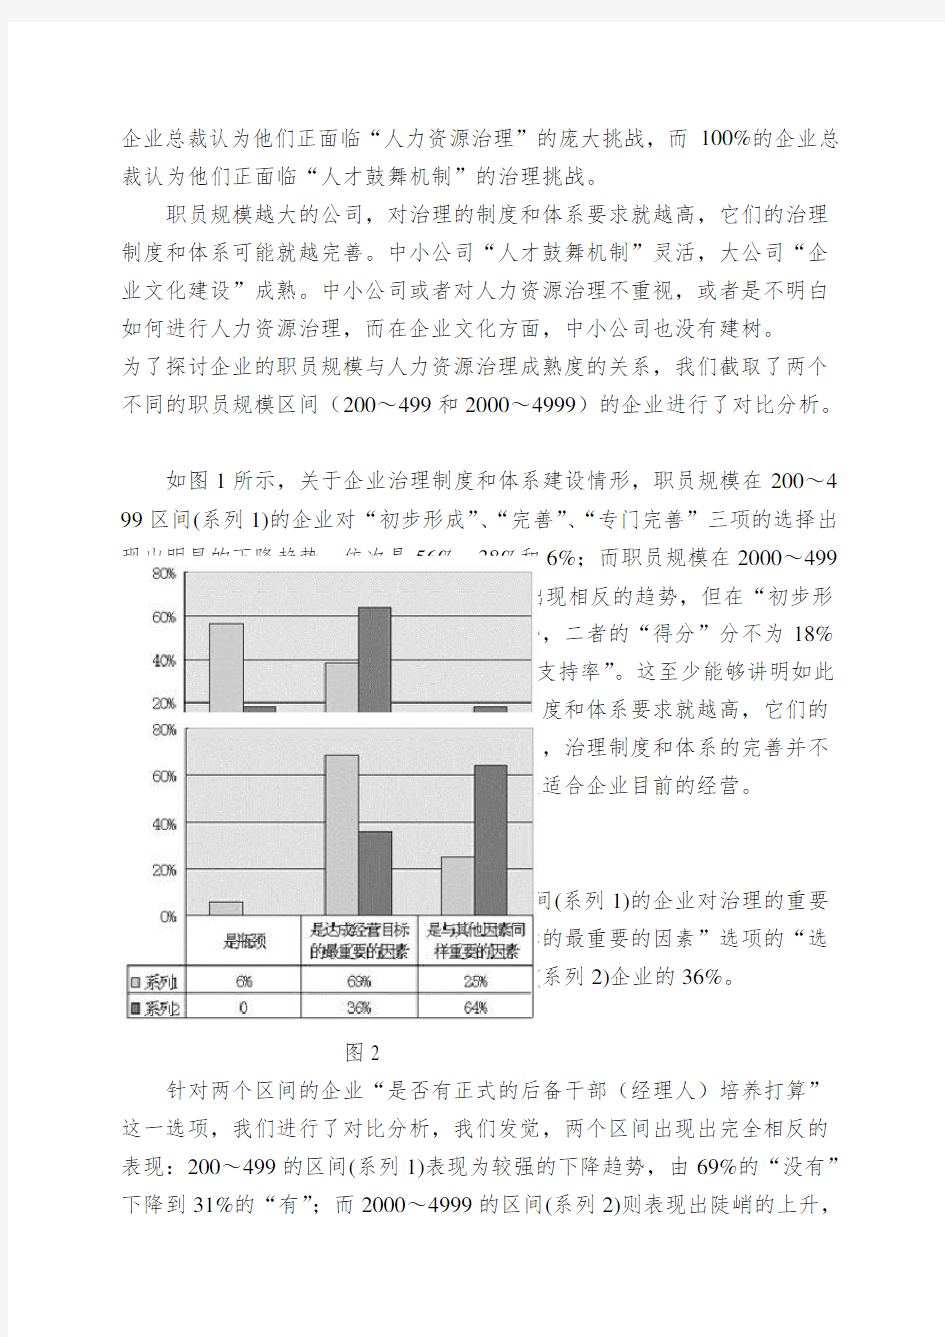 中国IT企业管理现状与问题分析报告31256201